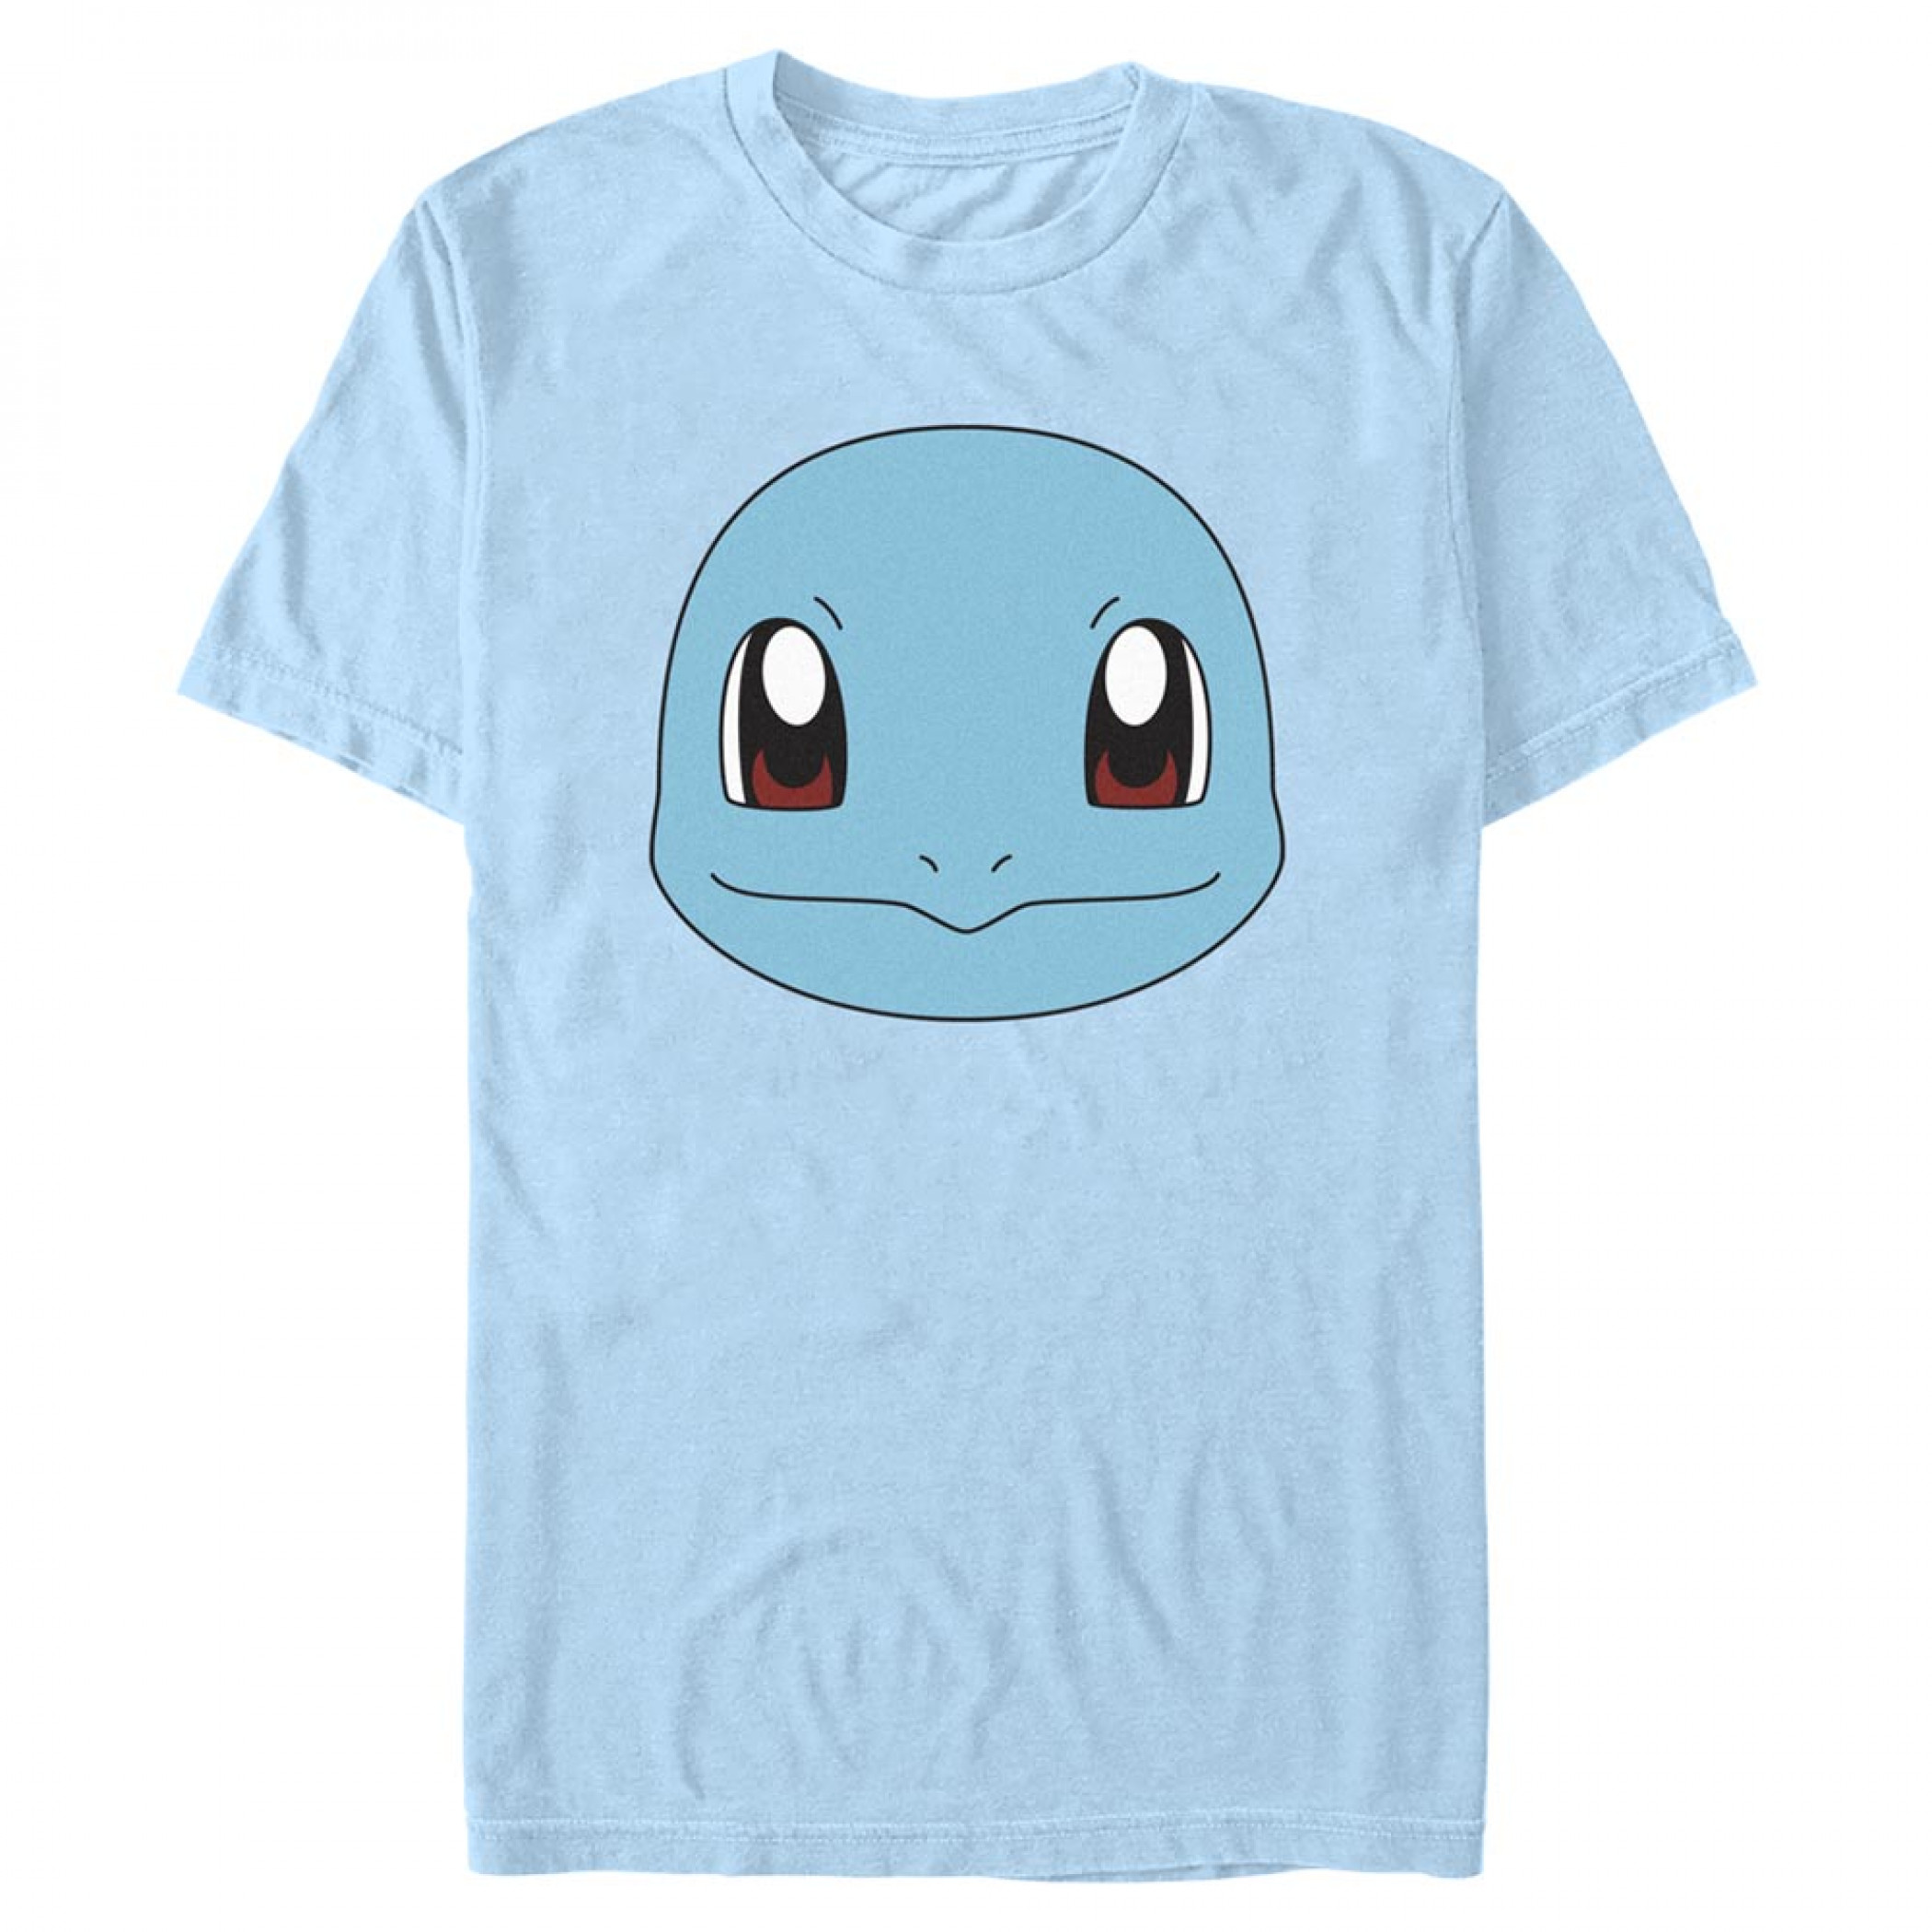 Pokémon Squirtle Face T-Shirt